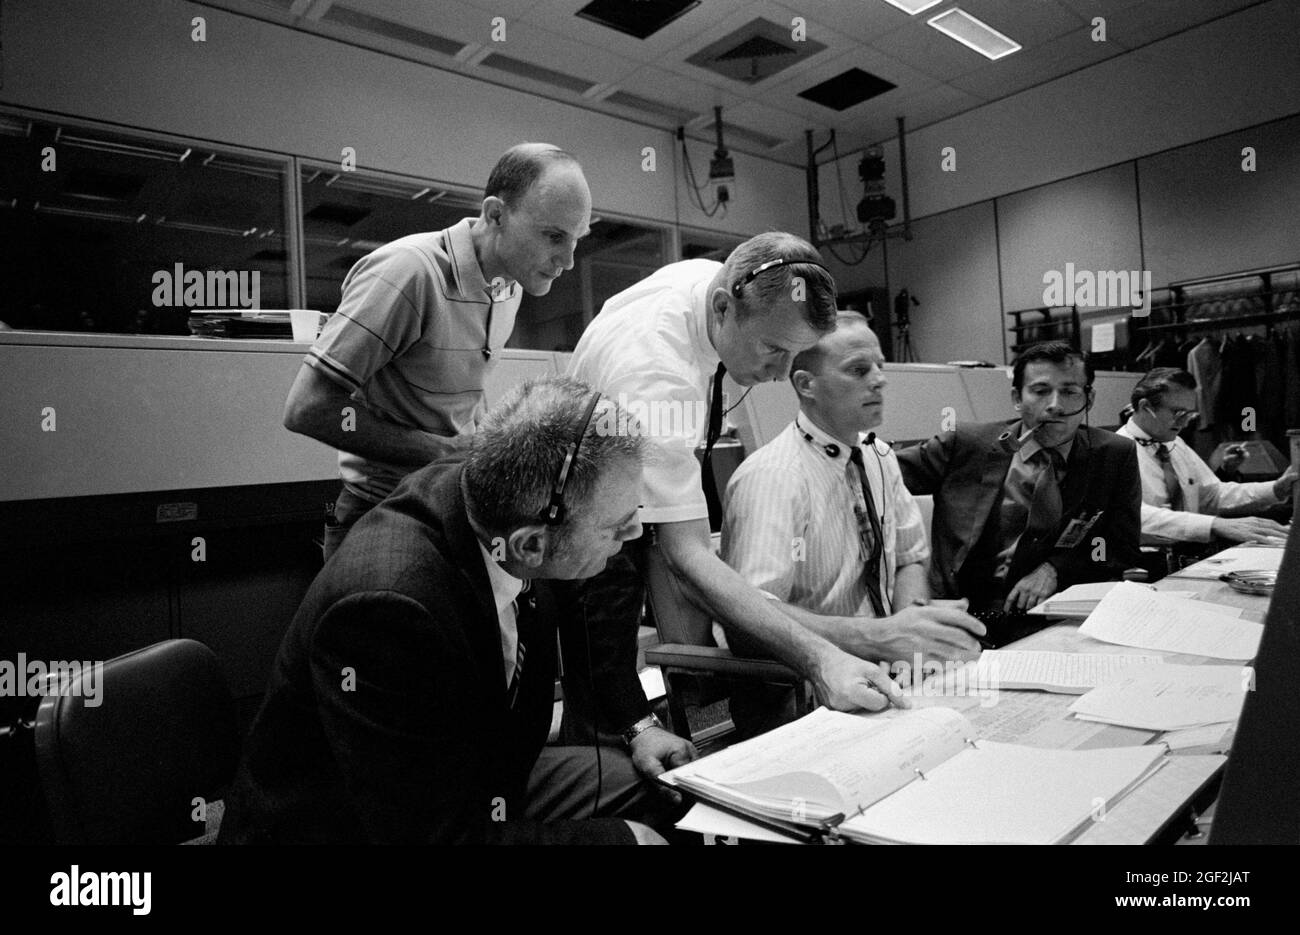 (14. April 1970) --- mehrere Personen, die für die Apollo 13-Mission wichtig sind, an Konsolen im Mission Operations Control Room (MOCR) des Mission Control Centers (MCC). Auf Konsolen sitzen von links nach rechts die Astronauten Donald K. Slayton, Direktor der Flugbesatzung, der Astronaut Jack R. Lousma, Raumschiff-Kommunikator Shift 3, und der Astronaut John W. Young, Kommandant der Apollo 13 Backup-Crew. Von links nach rechts stehen Astronaut Tom K. Mattingly II, der als Pilot des Apollo 13-Kommandomoduls ersetzt wurde, nachdem er gelernt hatte, dass er mit Masern herunterkommen könnte, und Astronaut Vance D. Brand, Sh Stockfoto